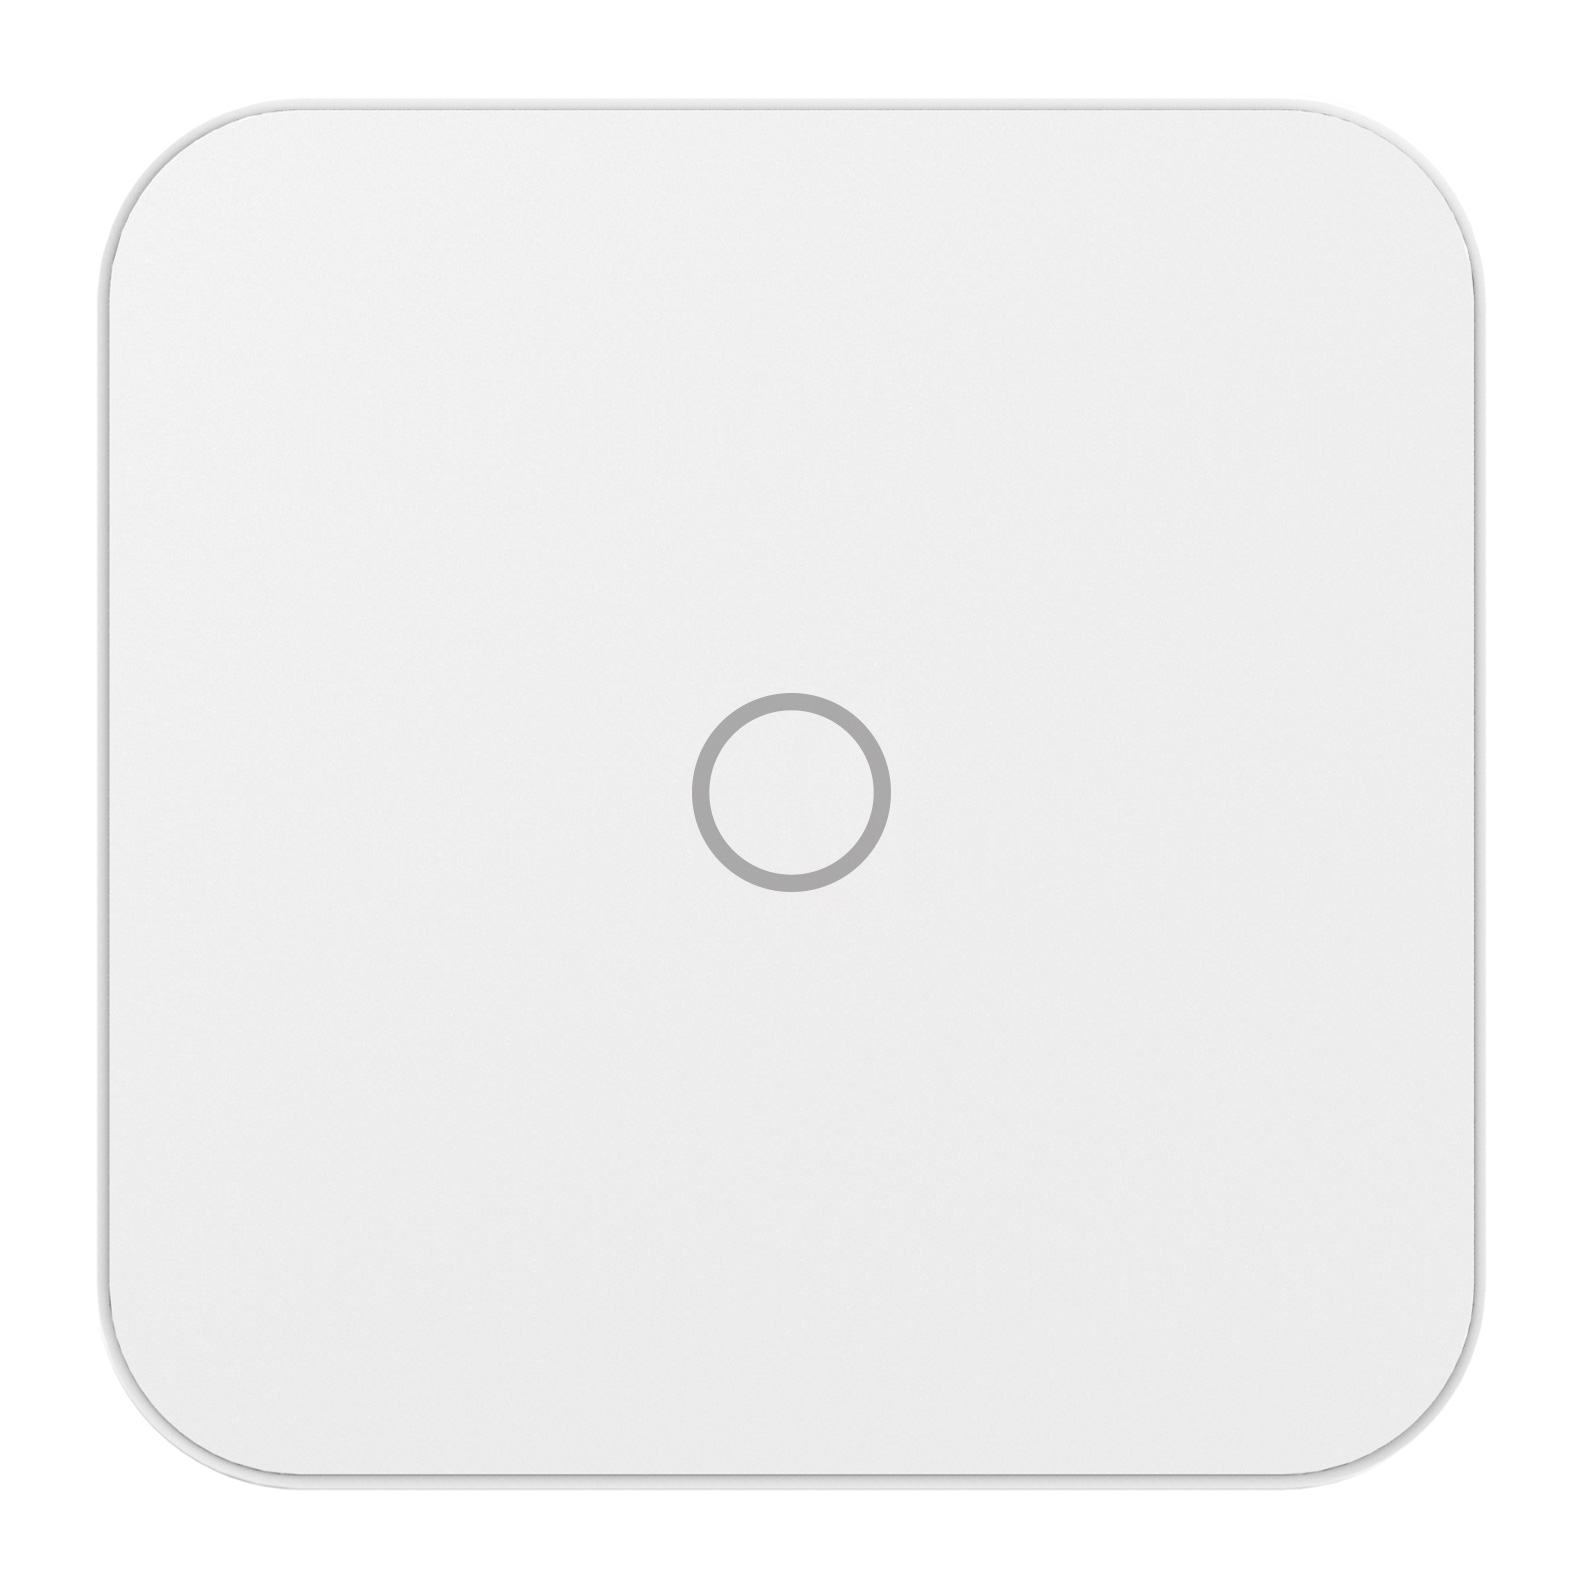 Obrázek iGET SECURITY M4 - Inteligentní WiFi alarm, ovládání IP kamer a zásuvek, záloha GSM, Android, iOS